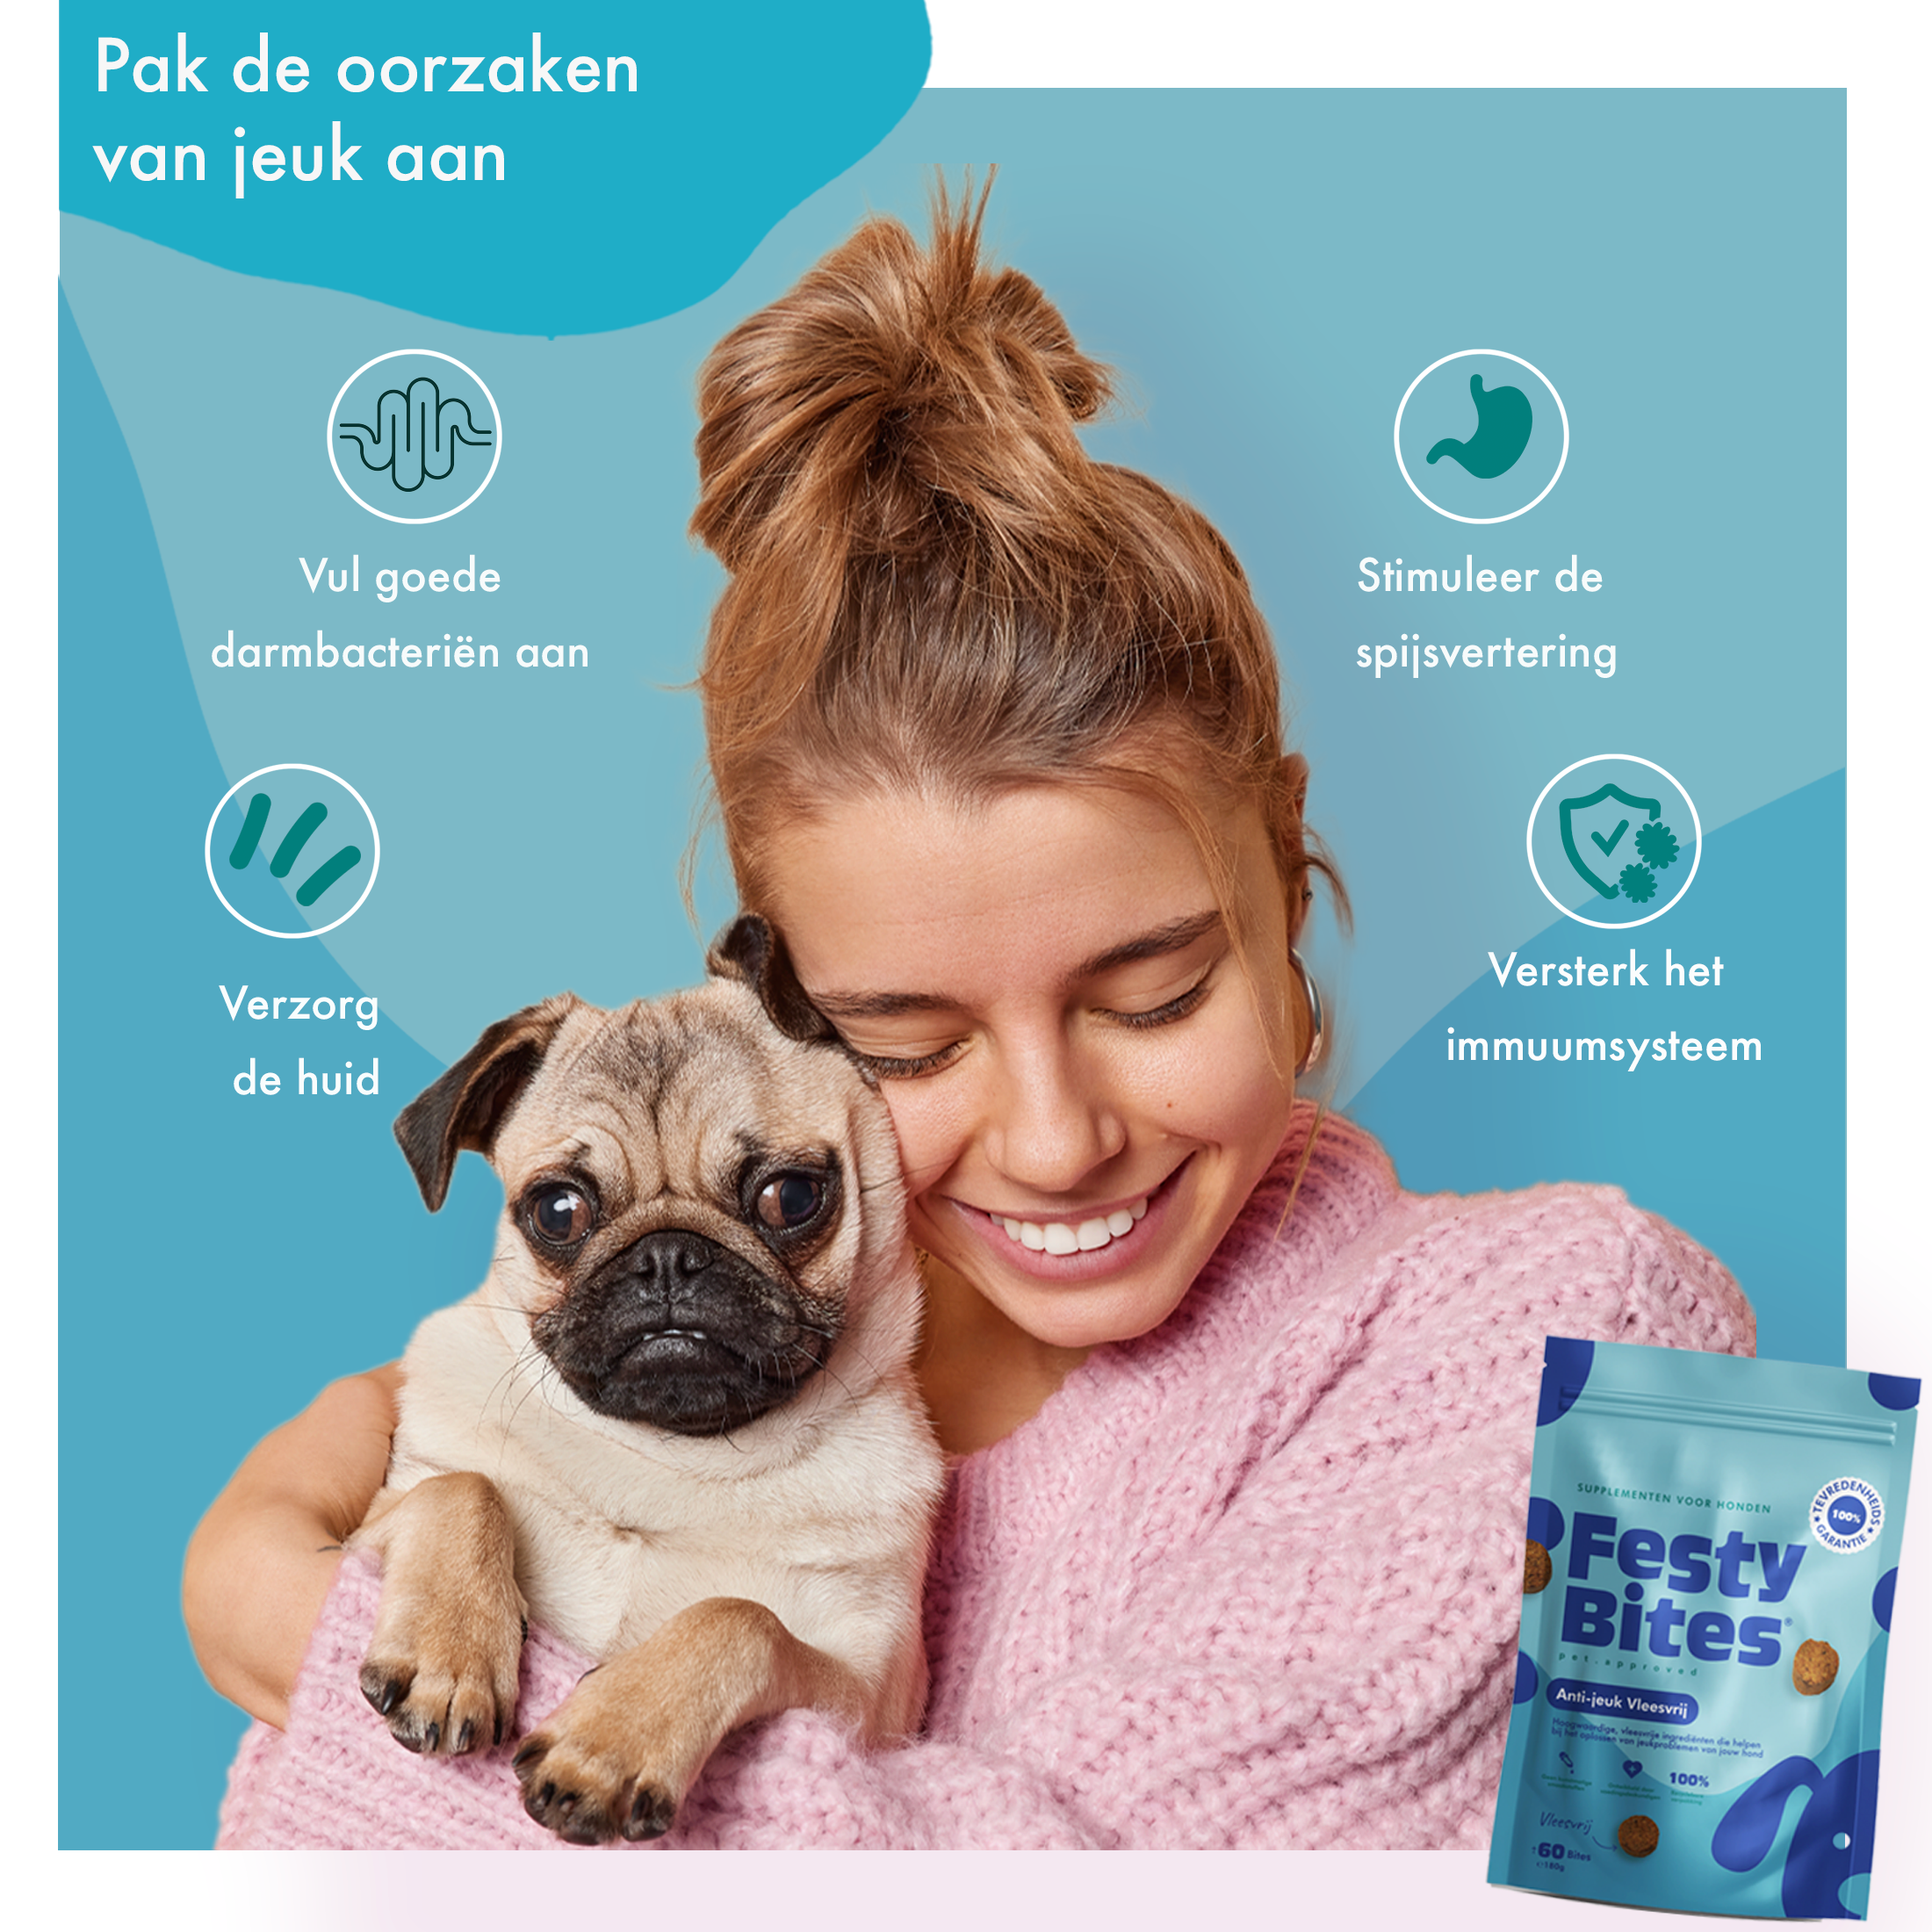 FestyBites® Probiotica Anti-jeuk vleesvrije probiotica snoepjes voor honden